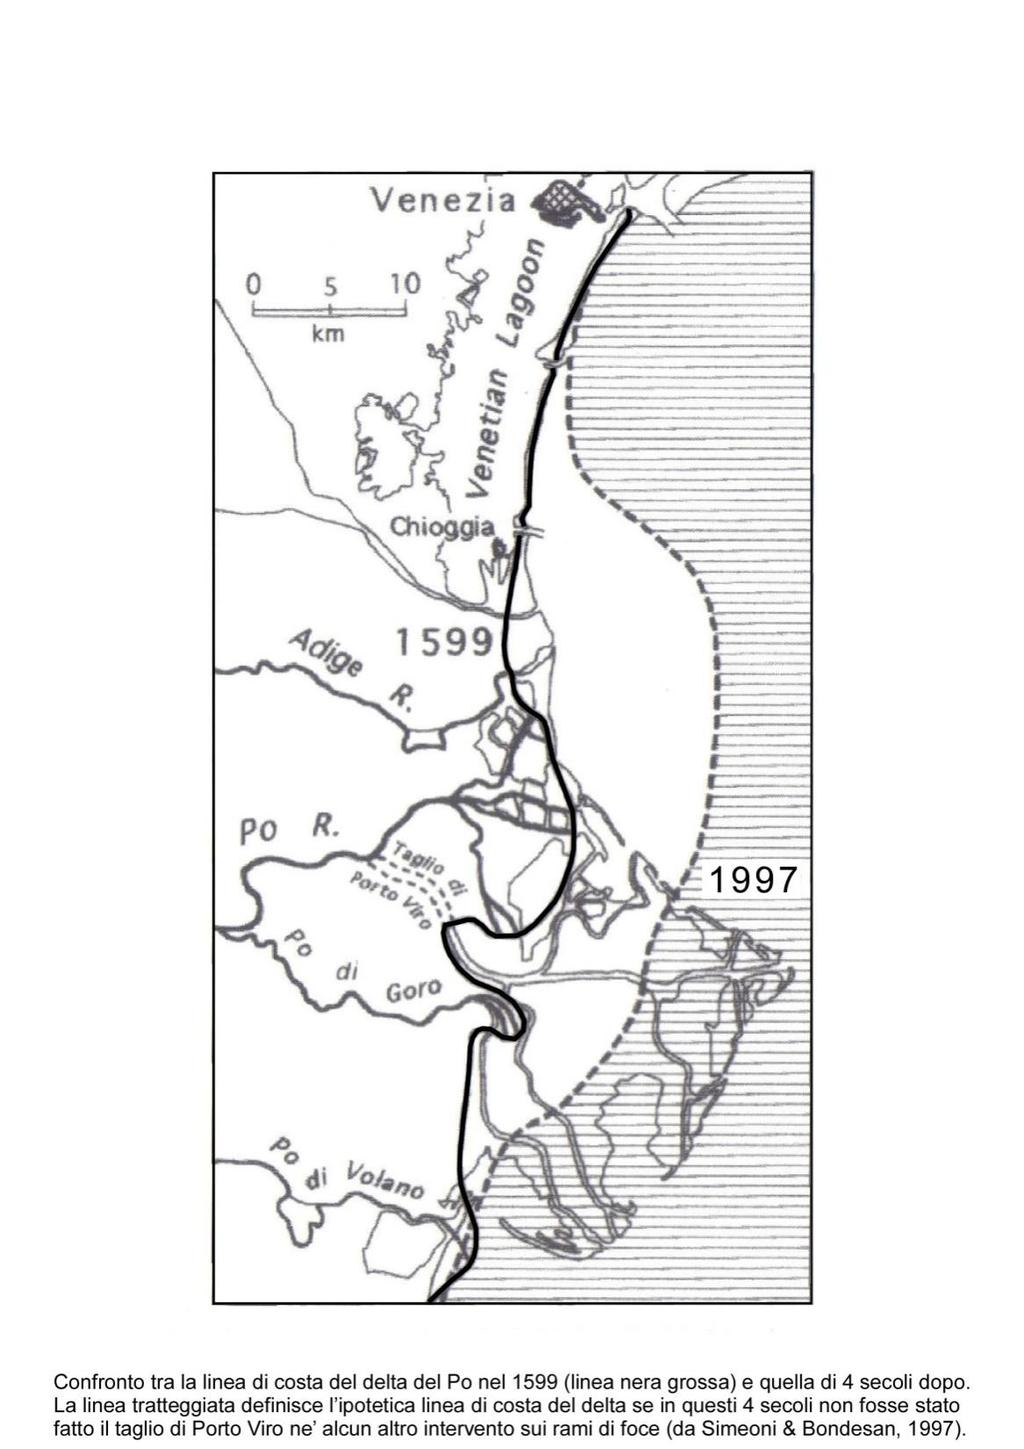 Confronto tra la linea di costa del delta del Po del 1599 (linea nera grossa) e quella che si sarebbe definita oggi, 4